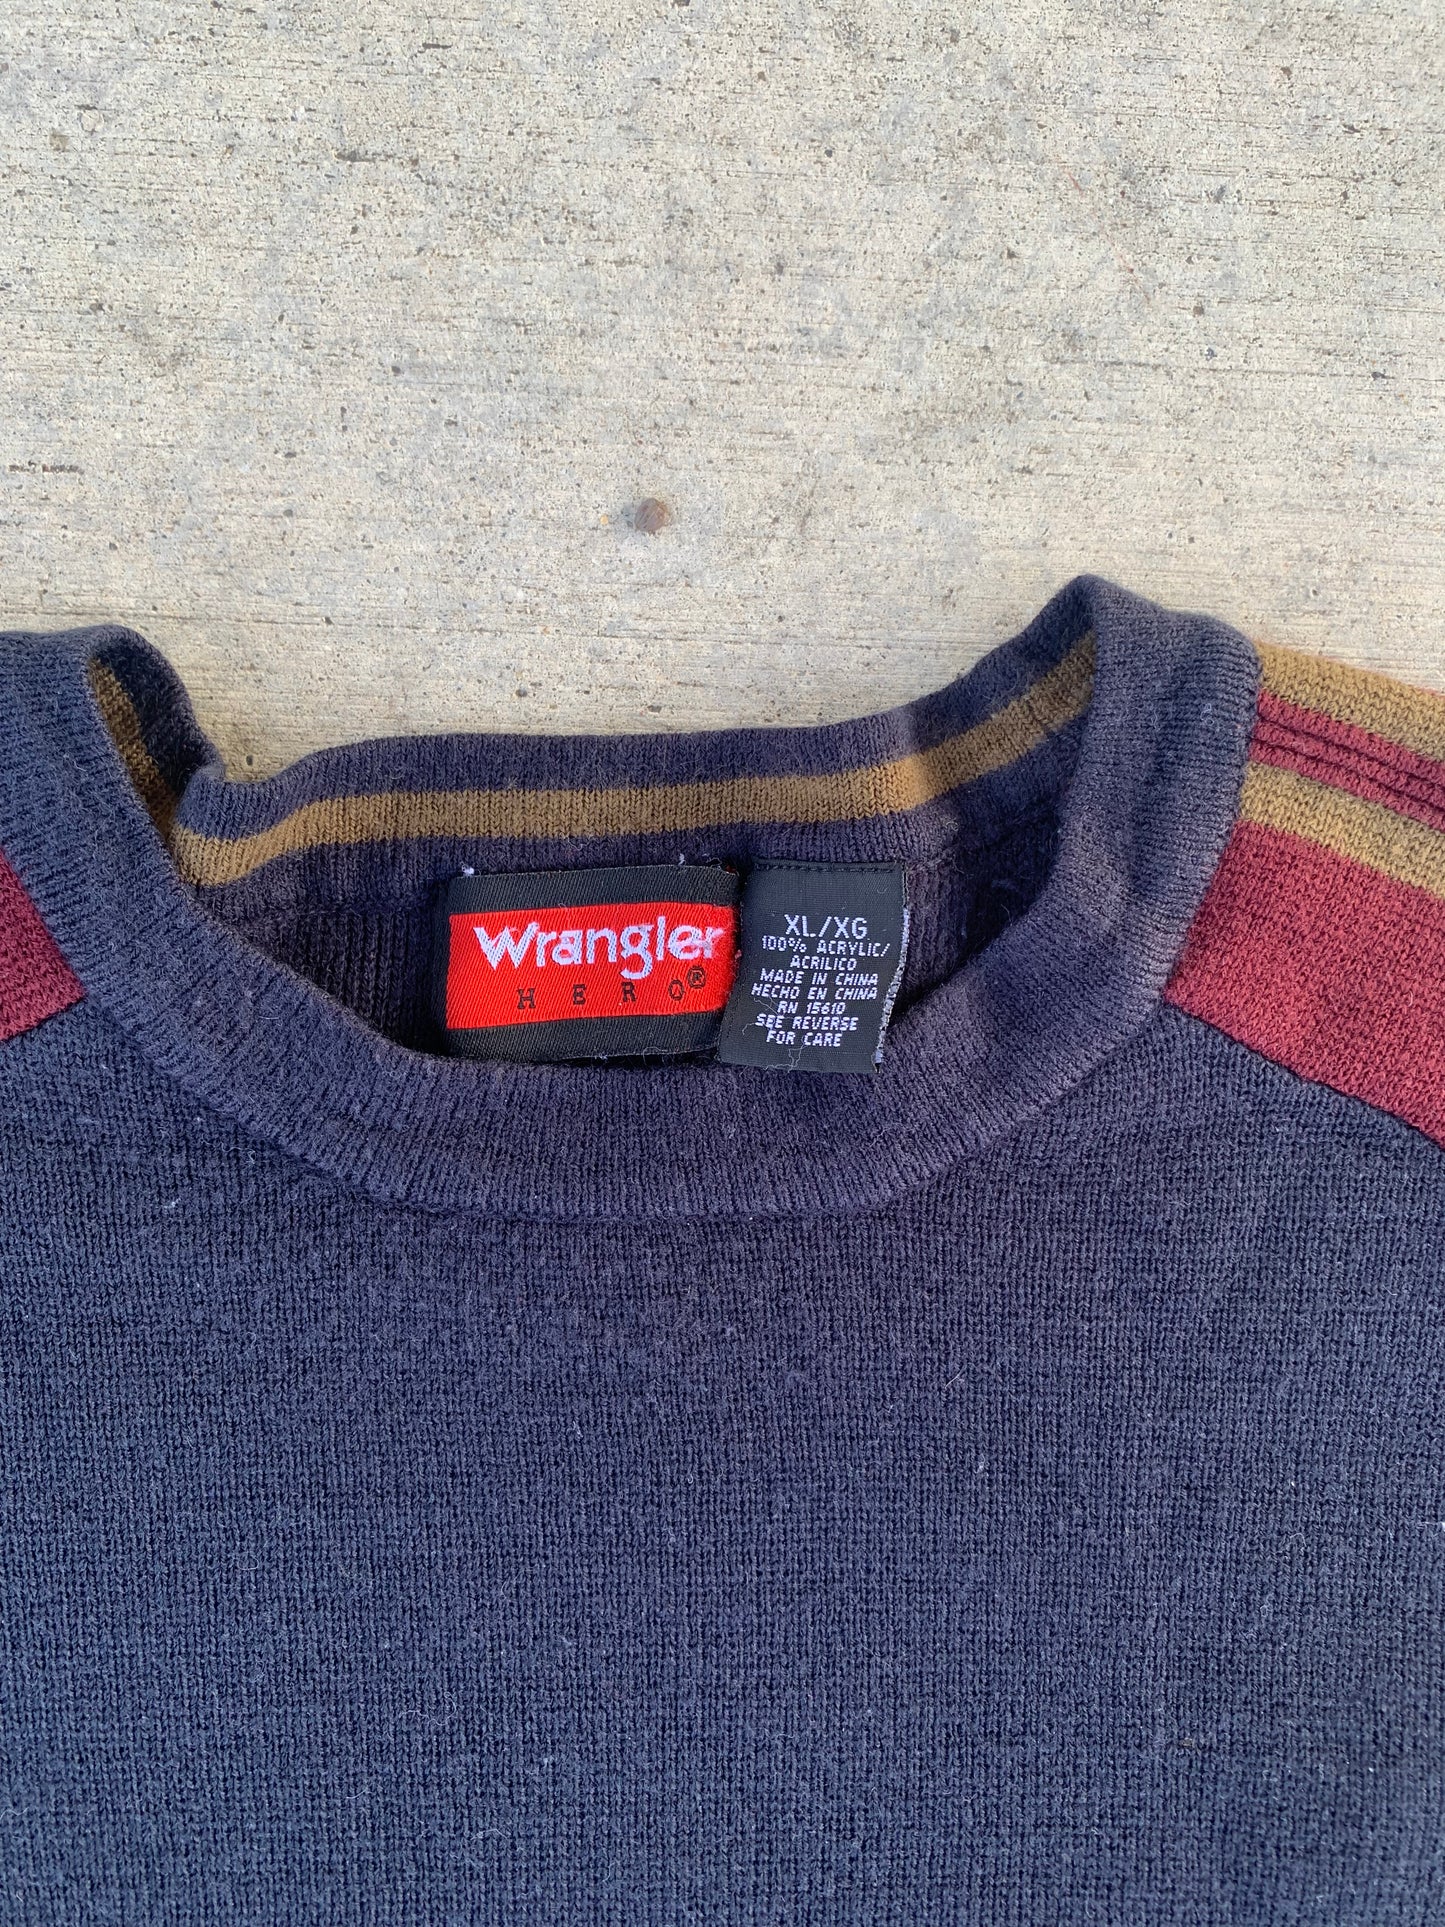 Wrangler 90's Sweater